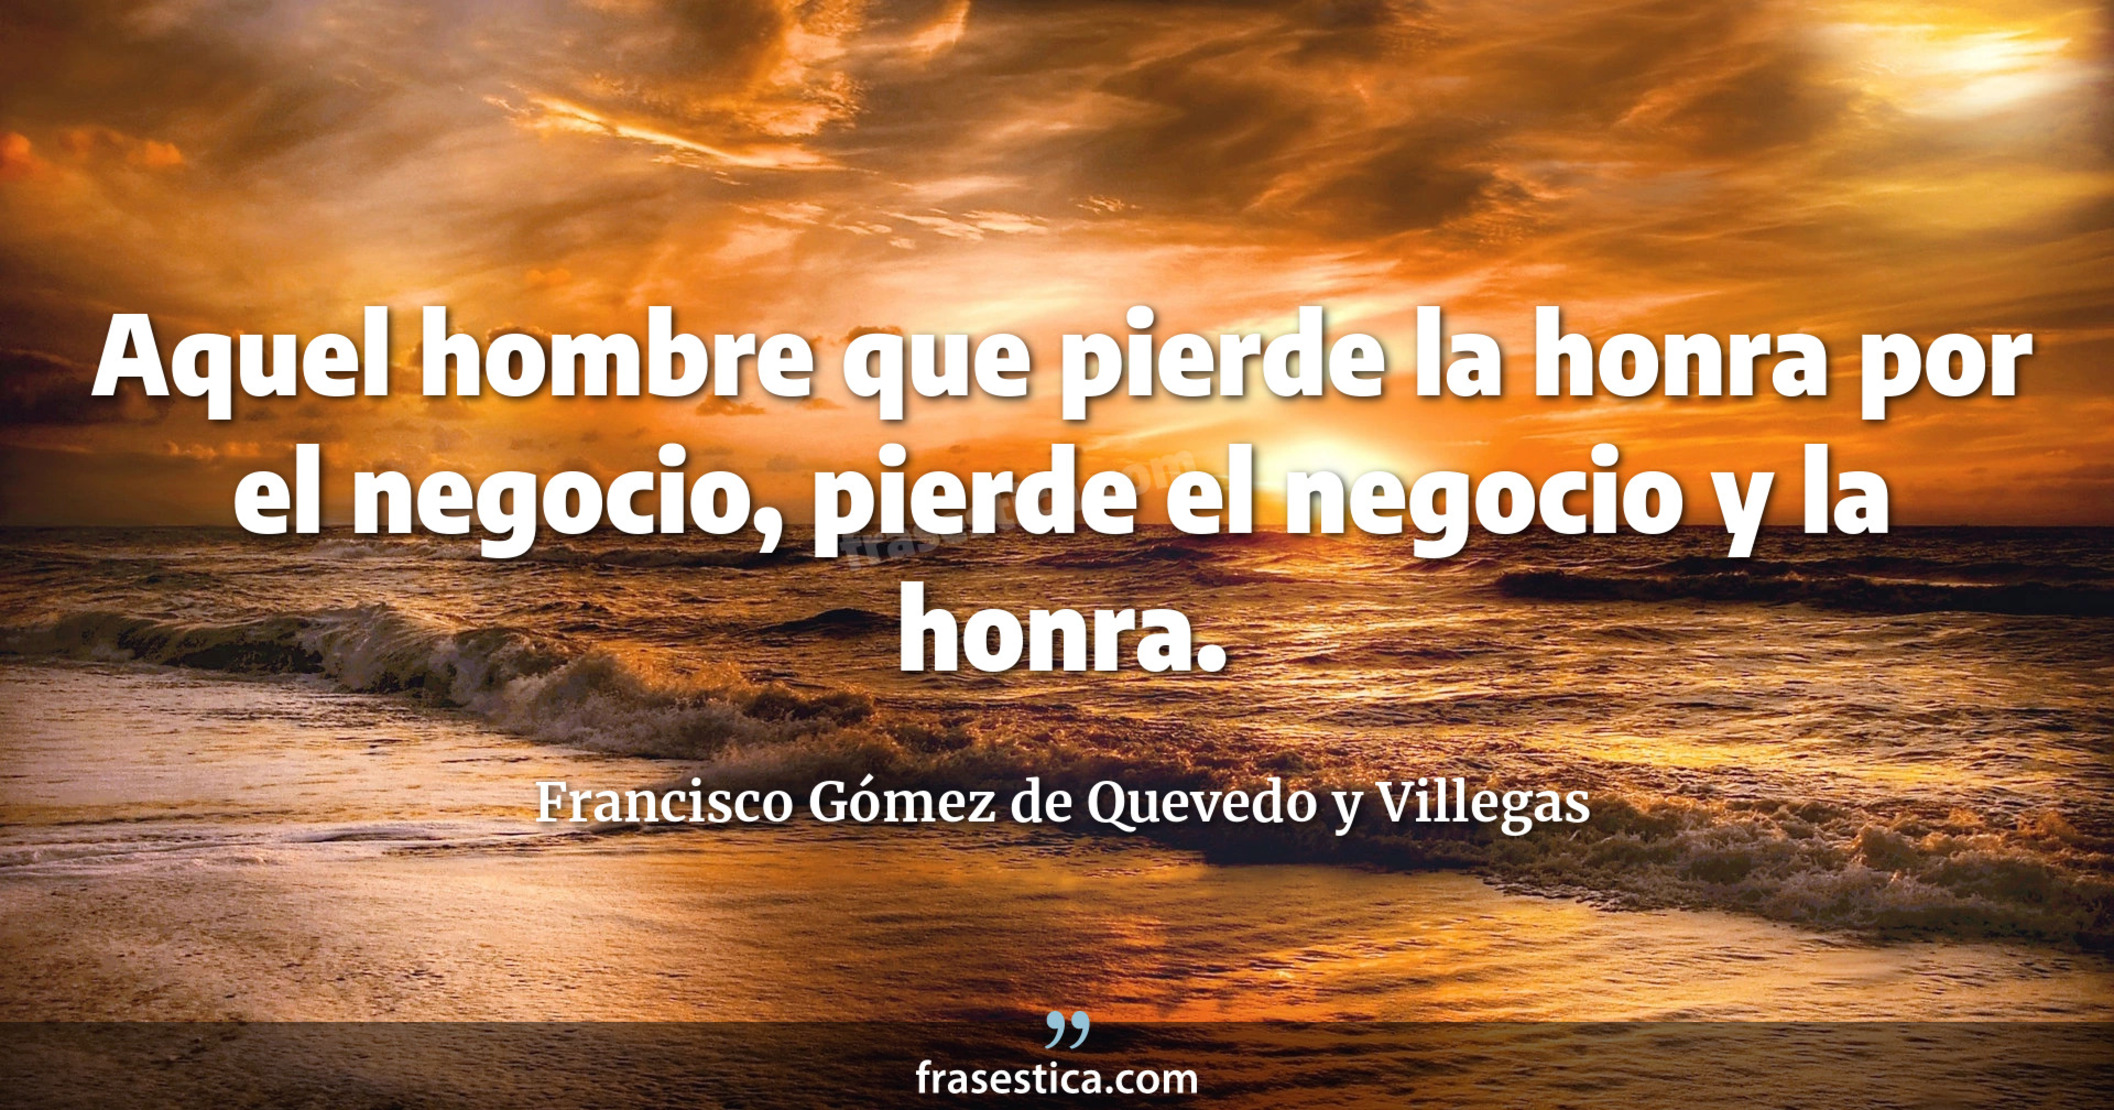 Aquel hombre que pierde la honra por el negocio, pierde el negocio y la honra. - Francisco Gómez de Quevedo y Villegas